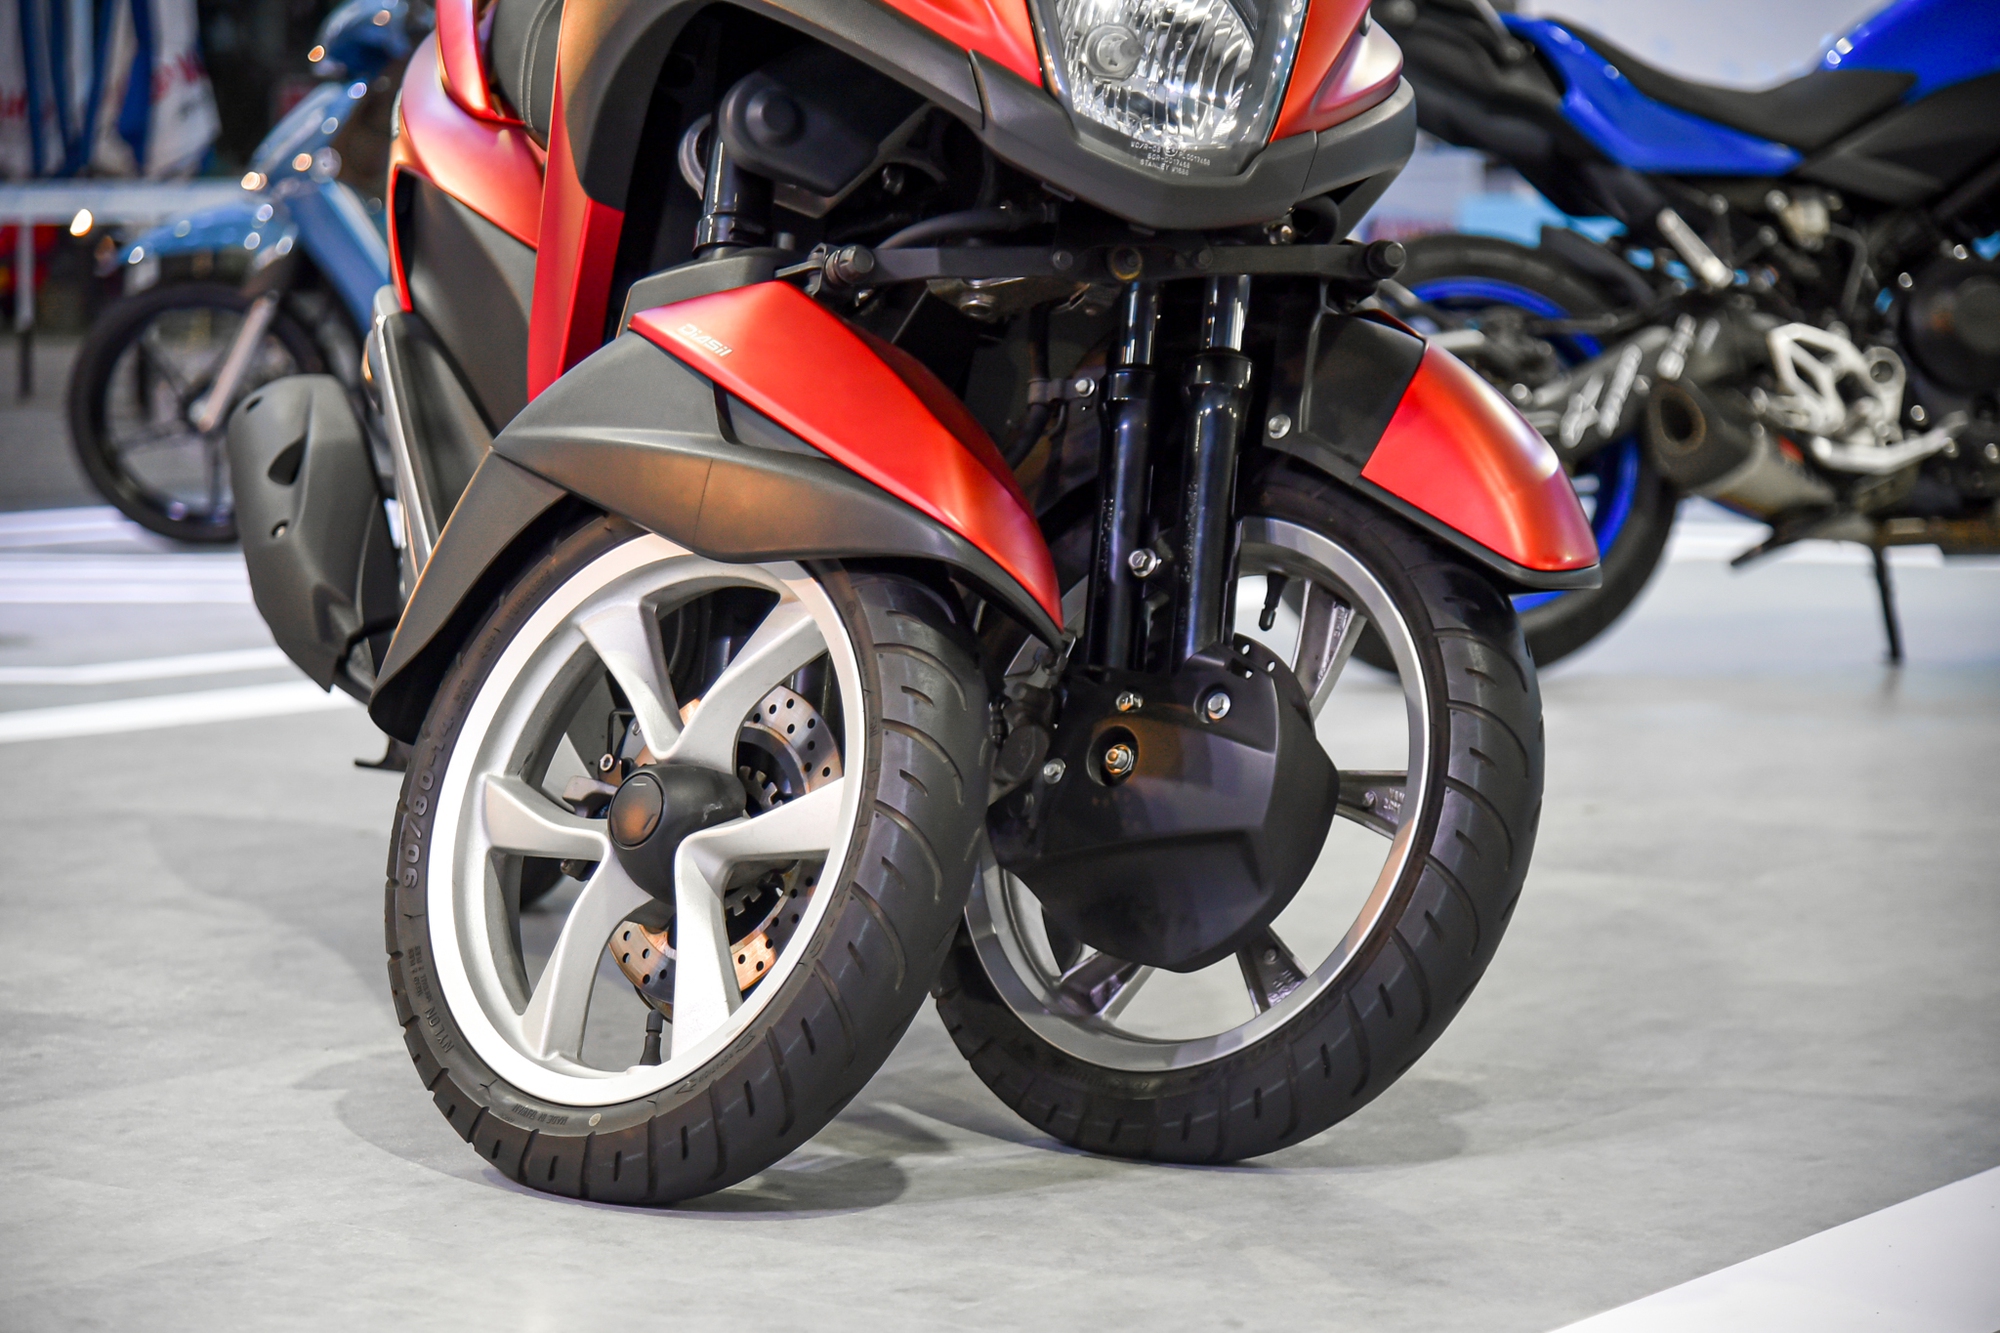 Bóc tách bộ đôi xe 3 bánh Yamaha độc đáo vừa về Việt Nam: Nhiều tính năng như trên ô tô - Ảnh 11.